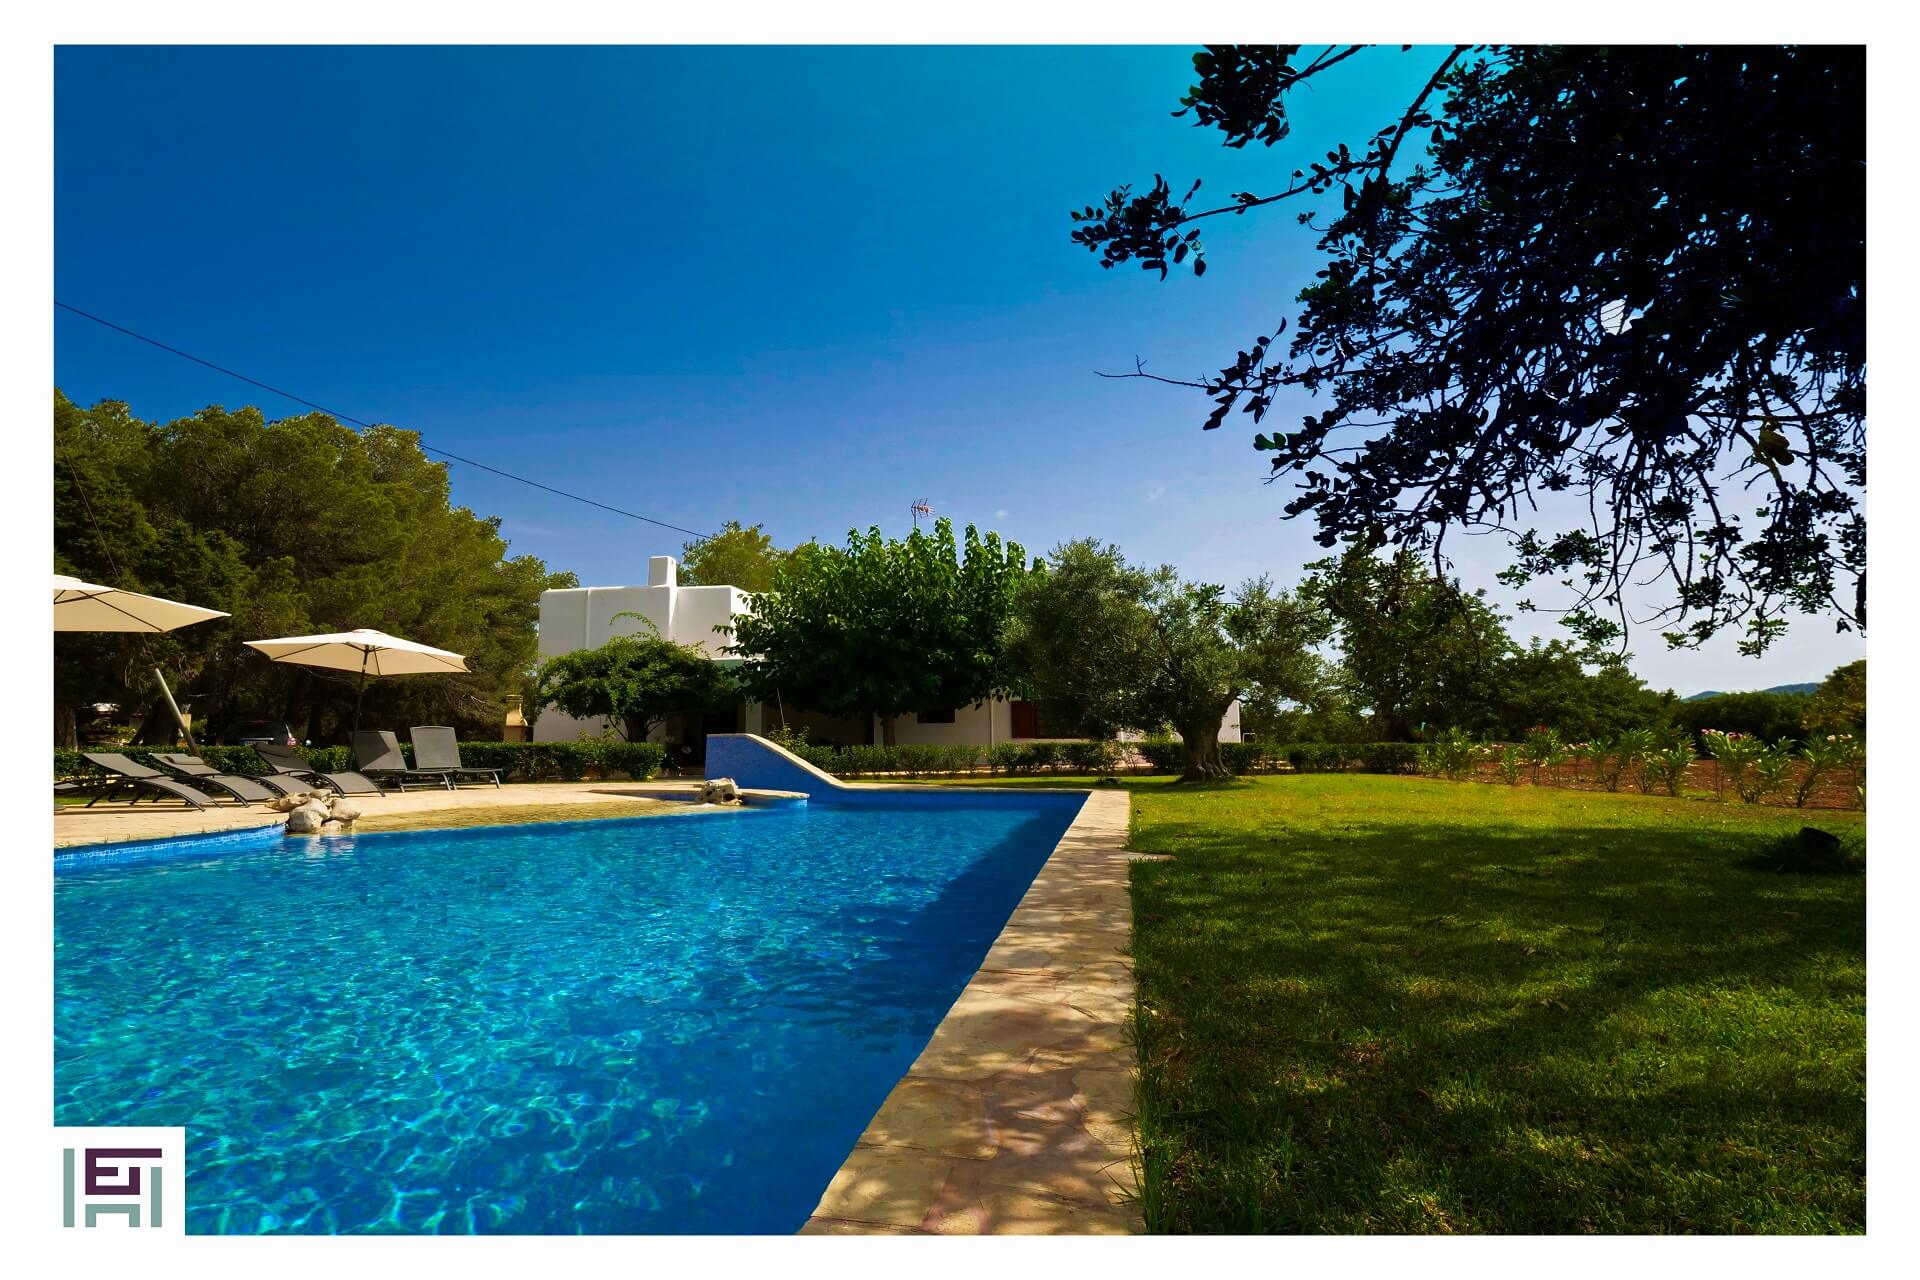 Finca C. Rosita -  Swimming pool with lawn